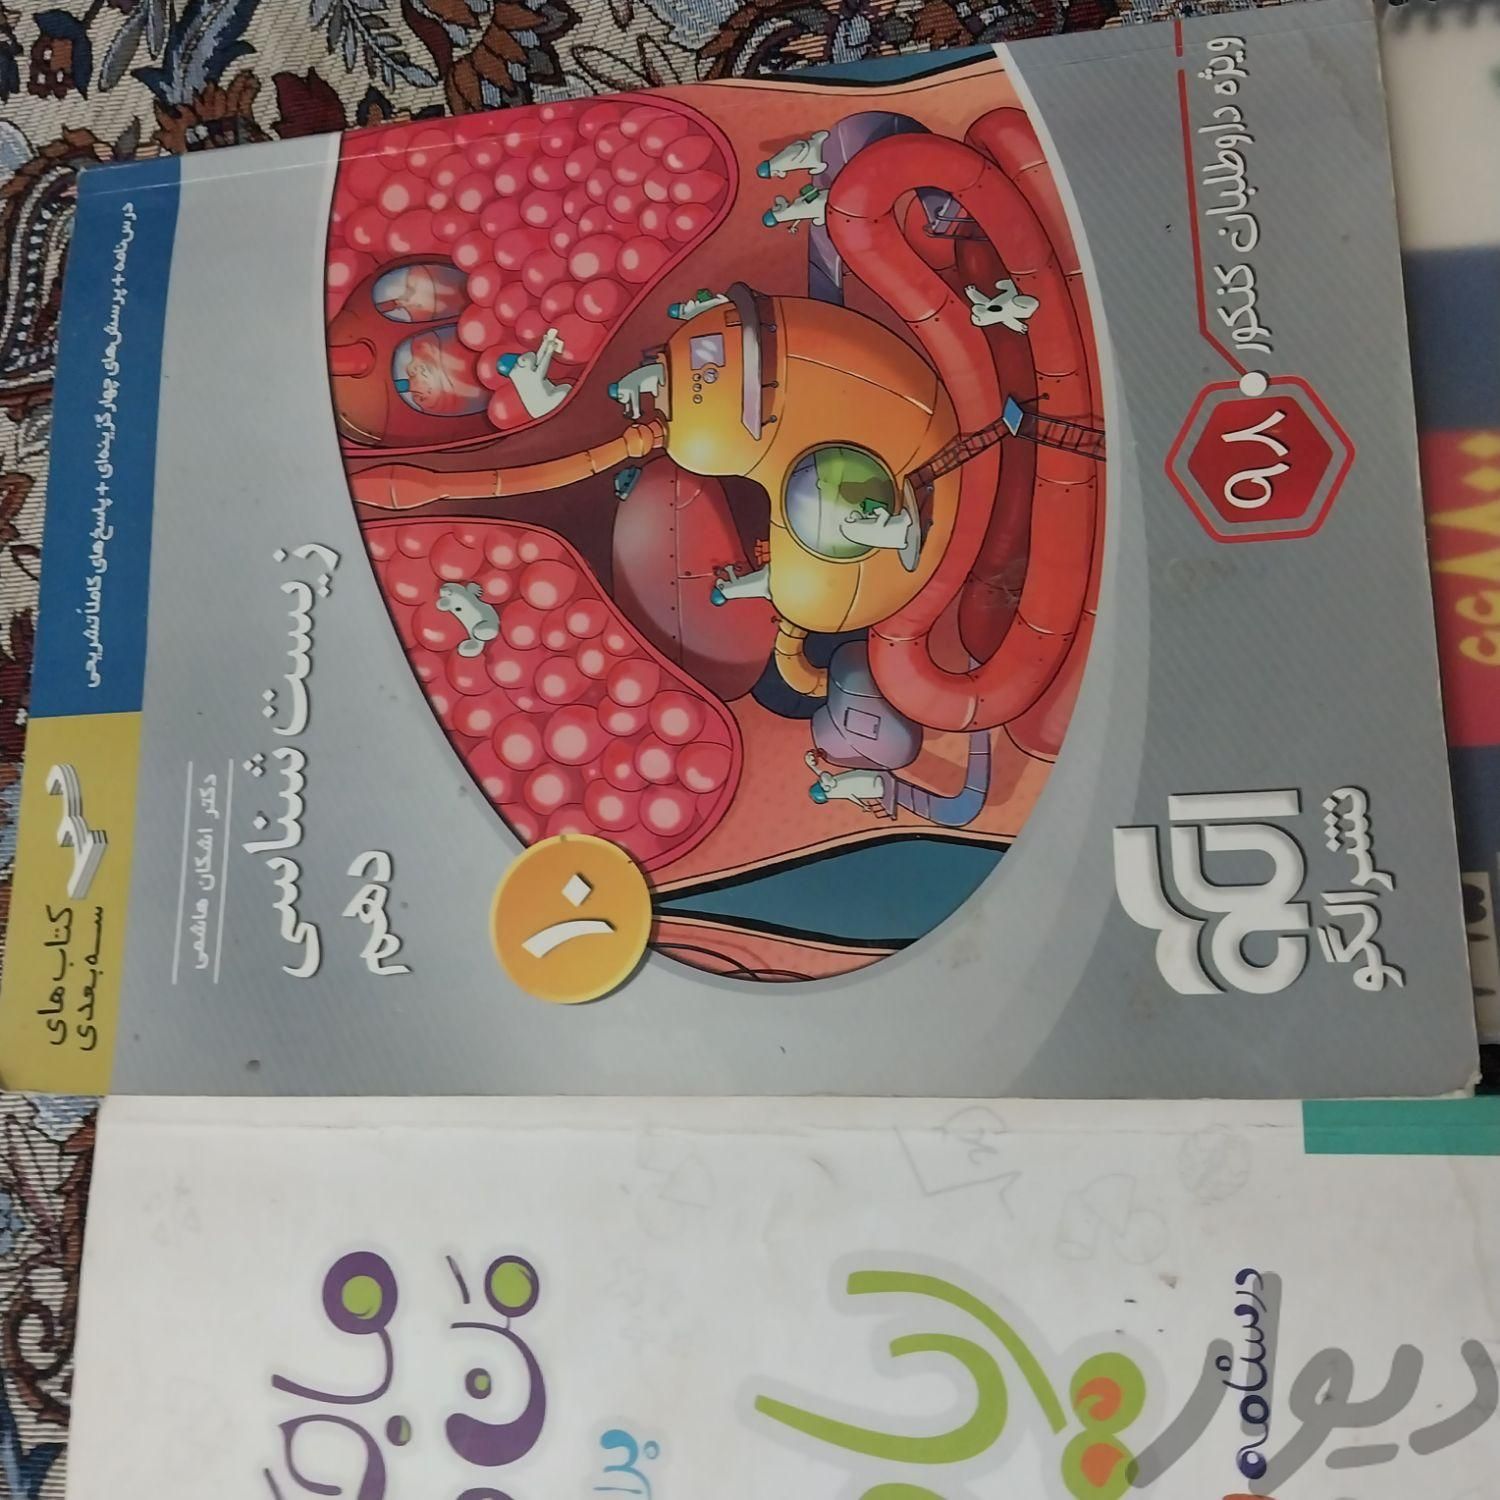 کتاب پایه ۱۰|کتاب و مجله آموزشی|تهران, ظهیرآباد|دیوار